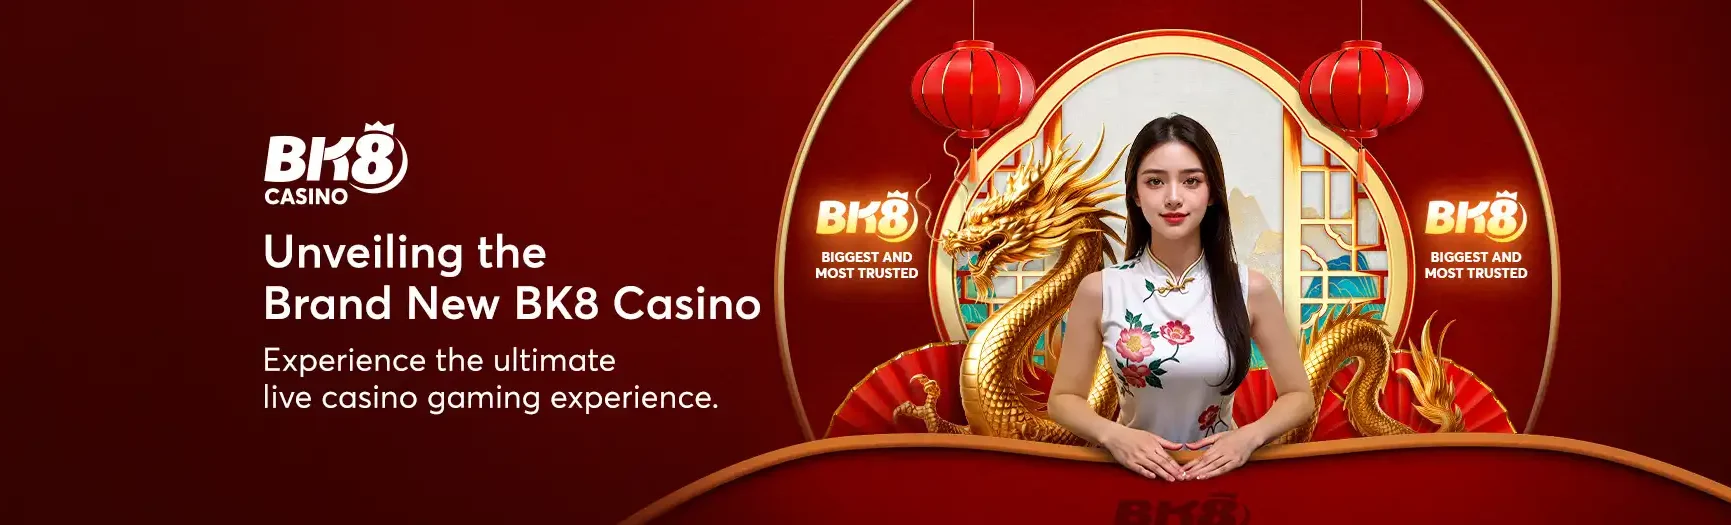 Brand-New-BK8-Casino-EN-SG